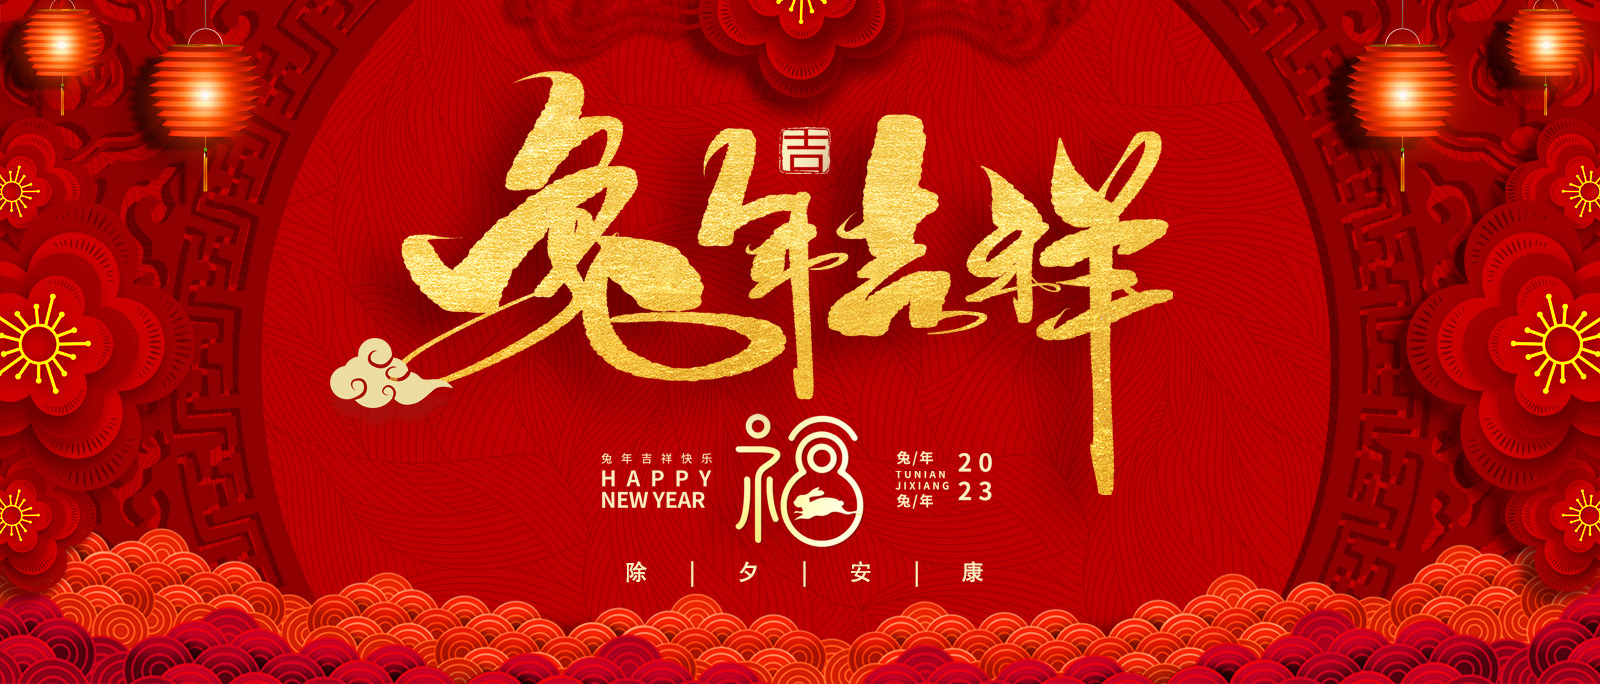 上海脉诺祝您及家人：吉祥喜乐，幸福安康！所求皆所愿，所行化坦途！